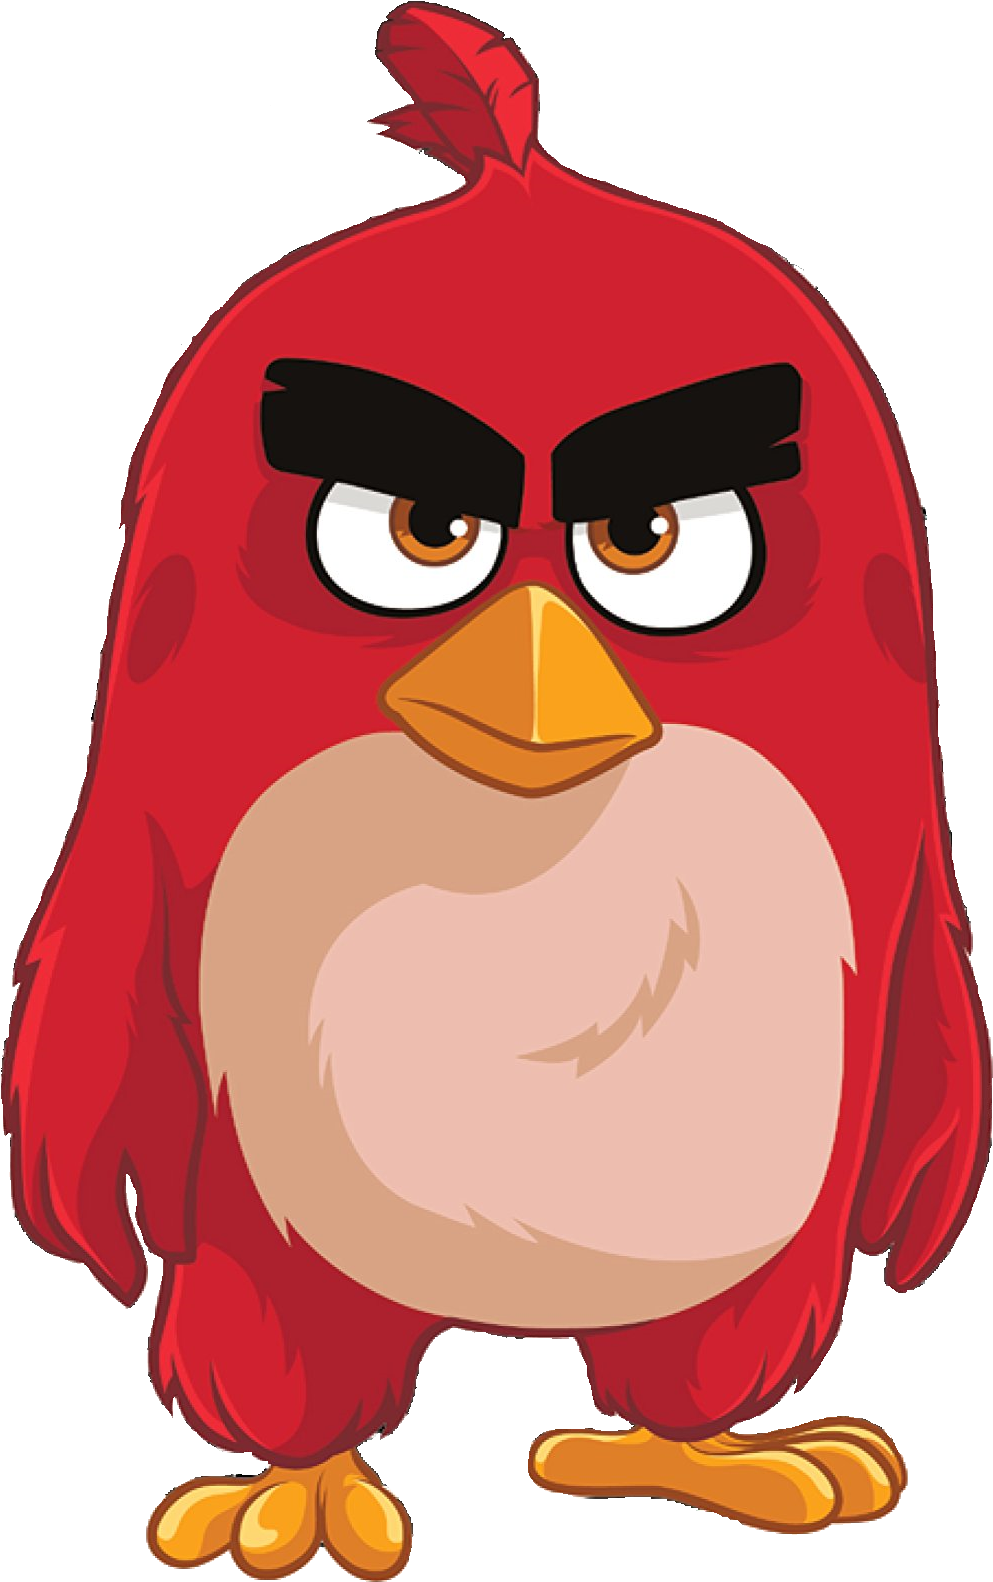 Image Abmovieredzazzle Png Birds Wiki Fandom Powered - Red Angry Birds Wikia (1101x1635)